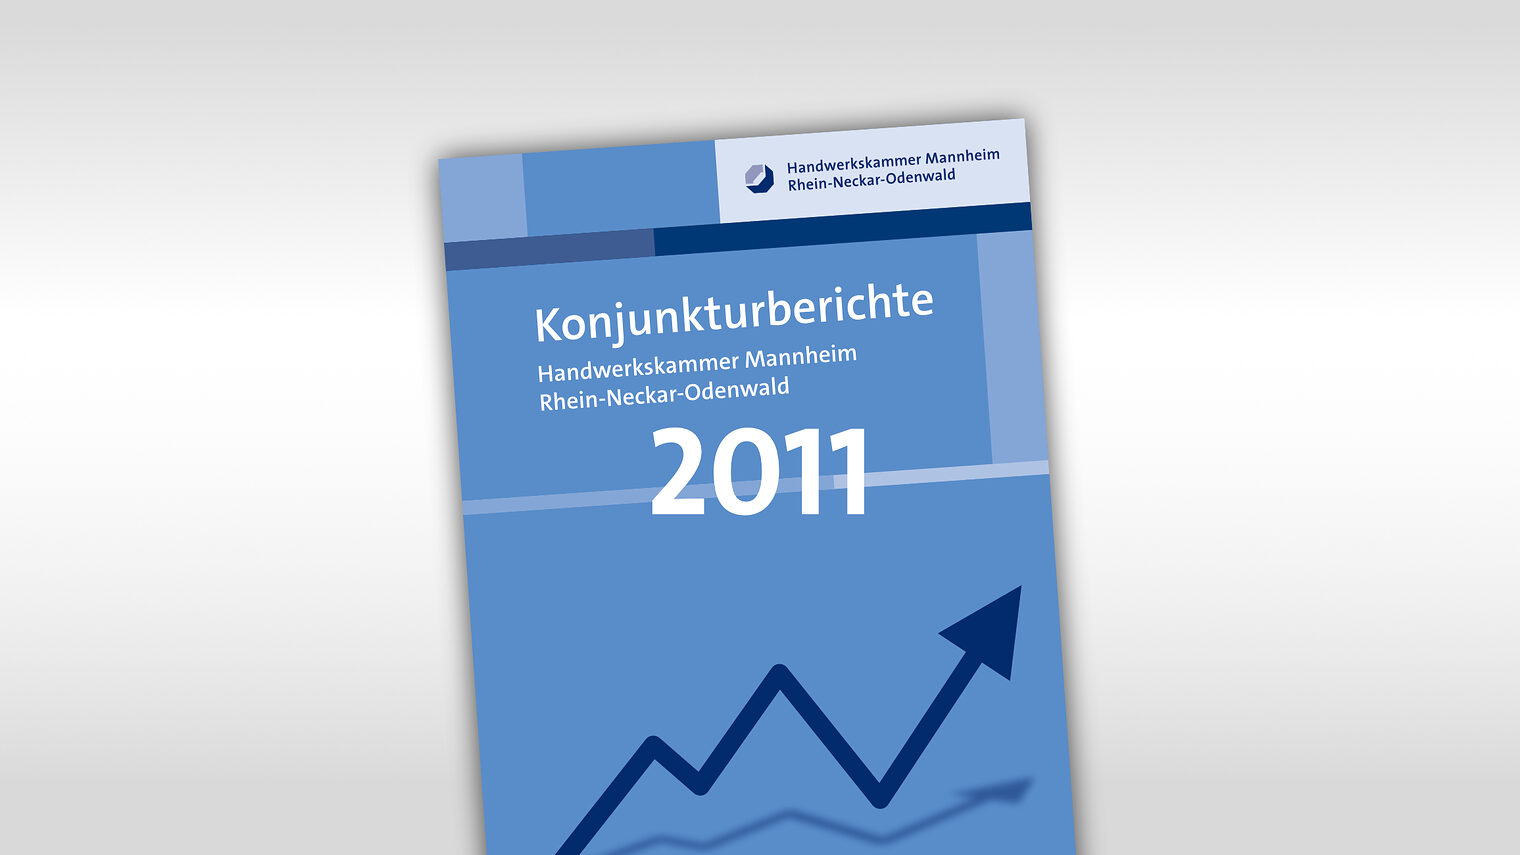 Titelmotiv Konjunkturbericht plus Jahreszahl 2011